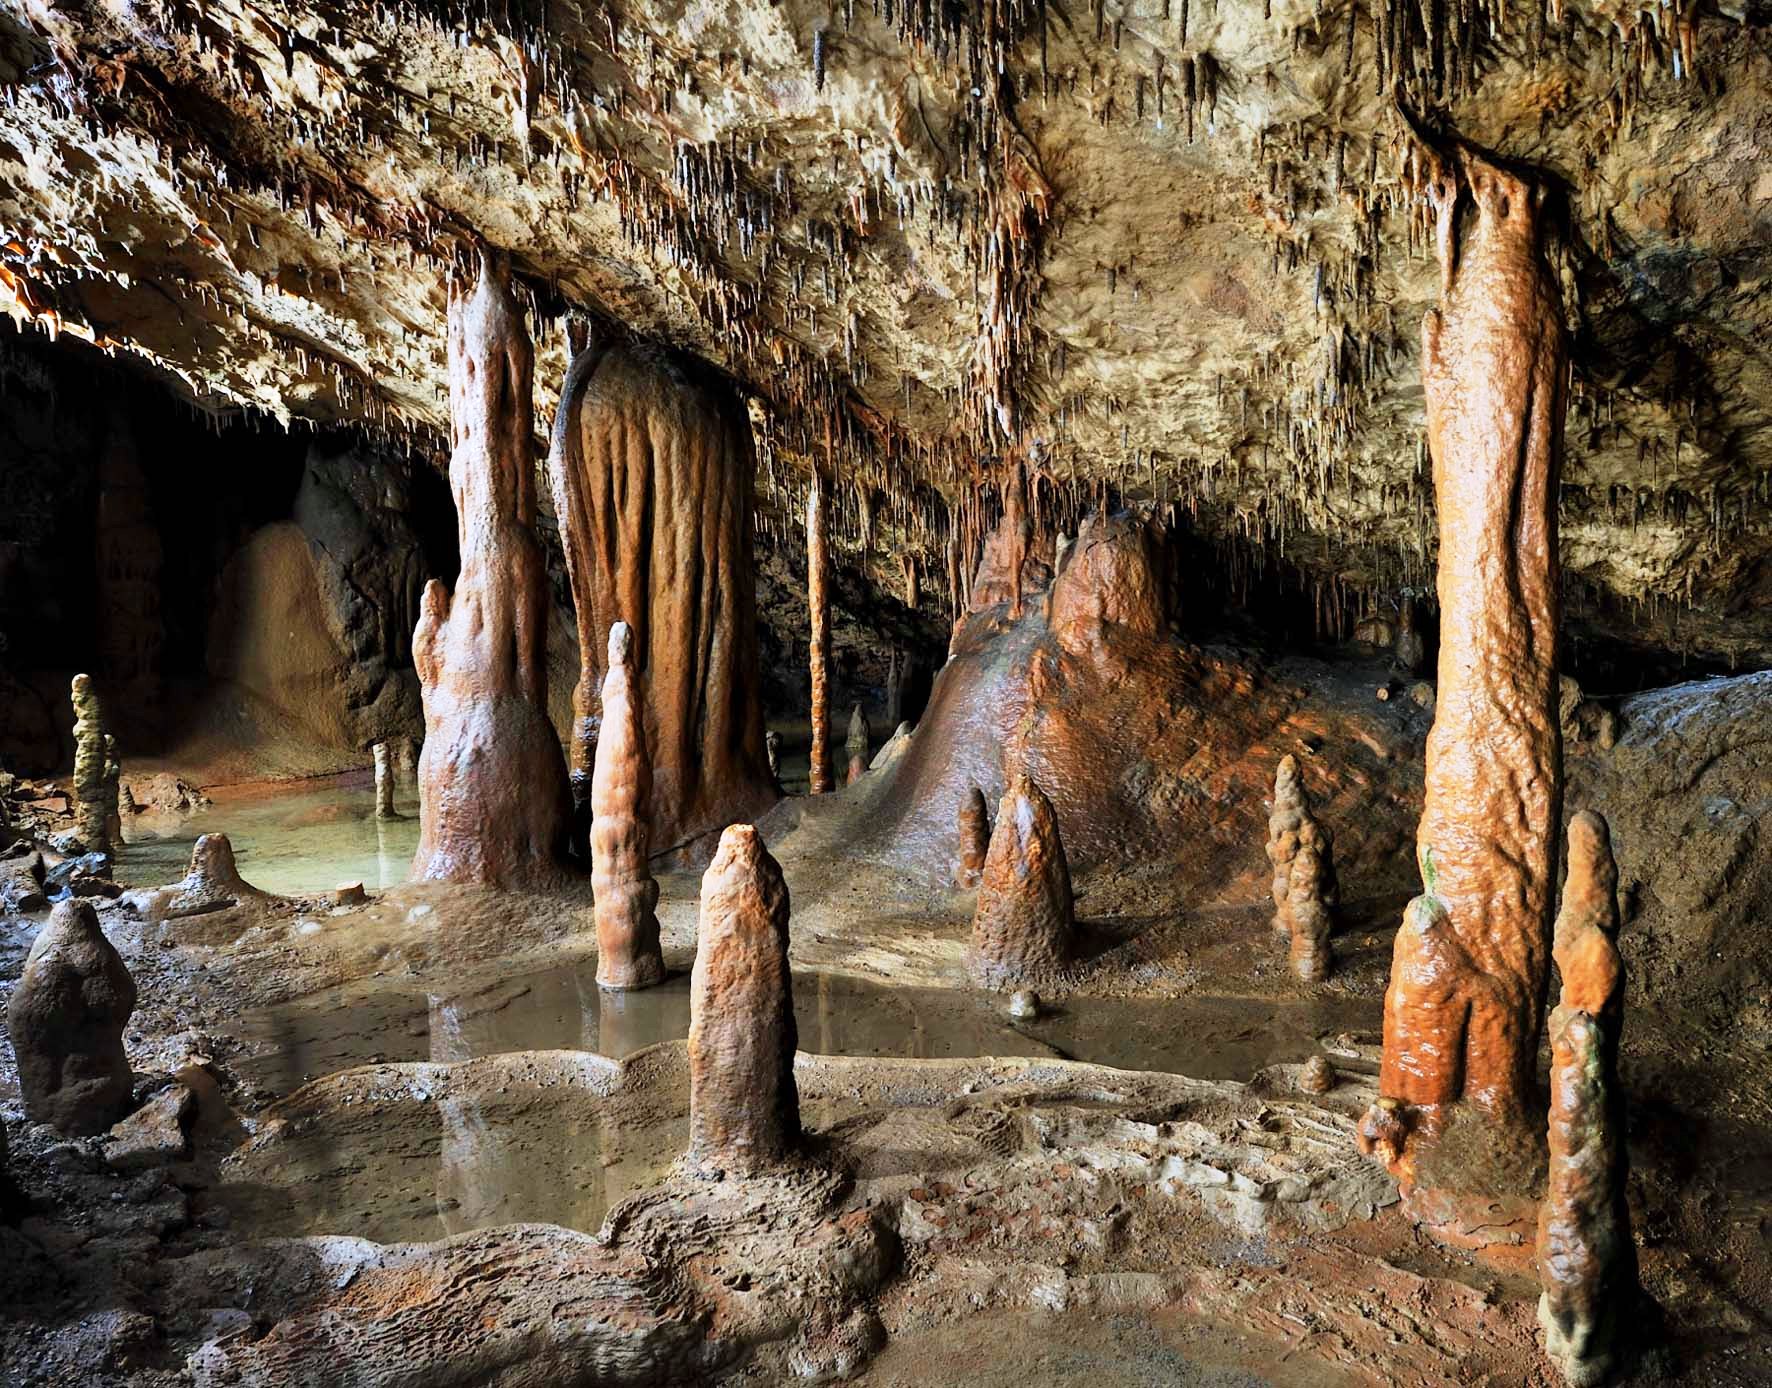 Cave v. Сталактиты и сталагмиты. Пещерные сталактиты и сталагмиты. Пещеры сталагмиты сталактиты и сталагмиты. Пещера сталактитов и сталагмитов.